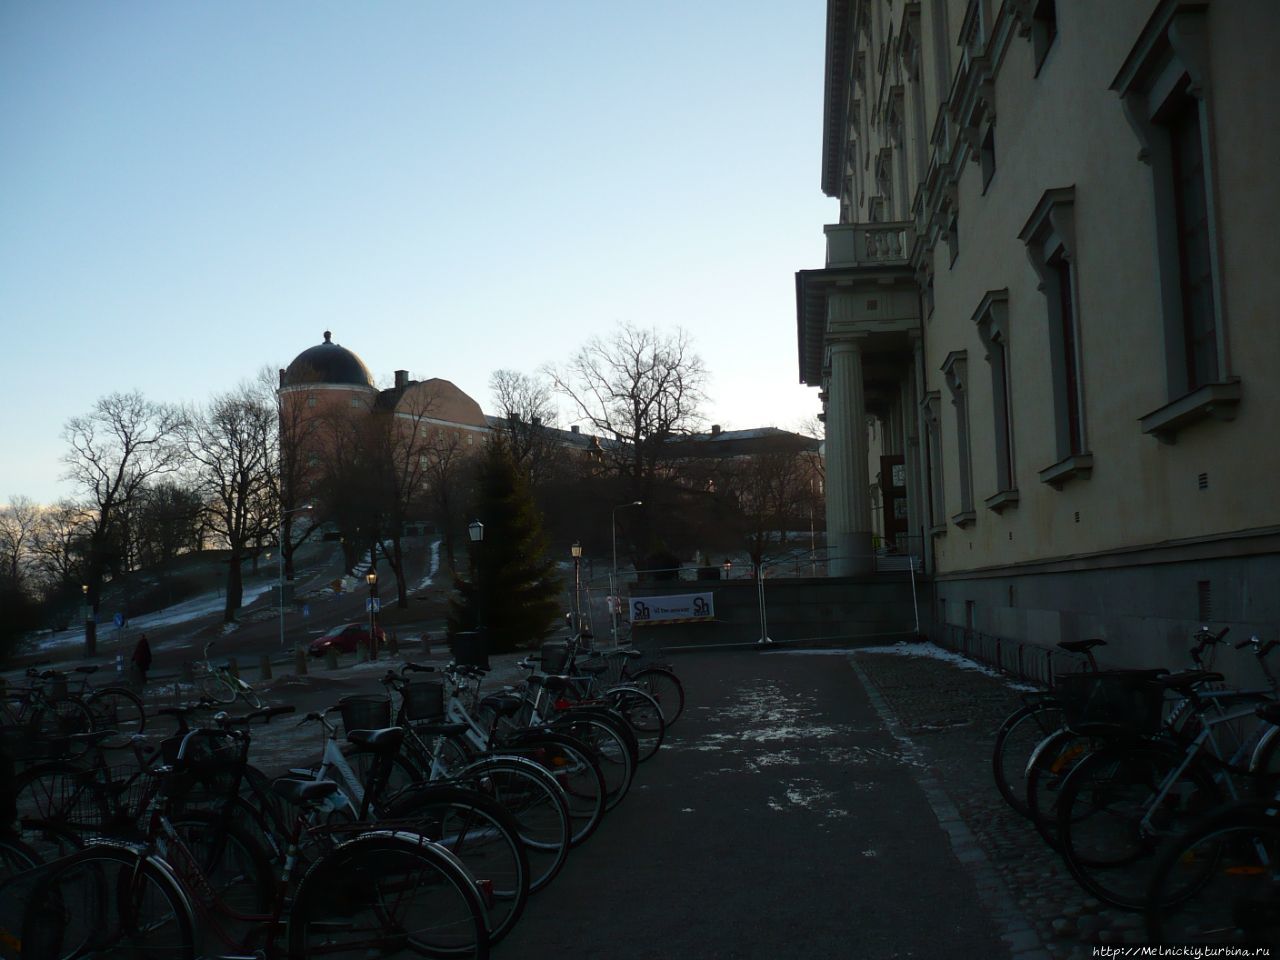 Библиотека Уппсальского университета Уппсала, Швеция